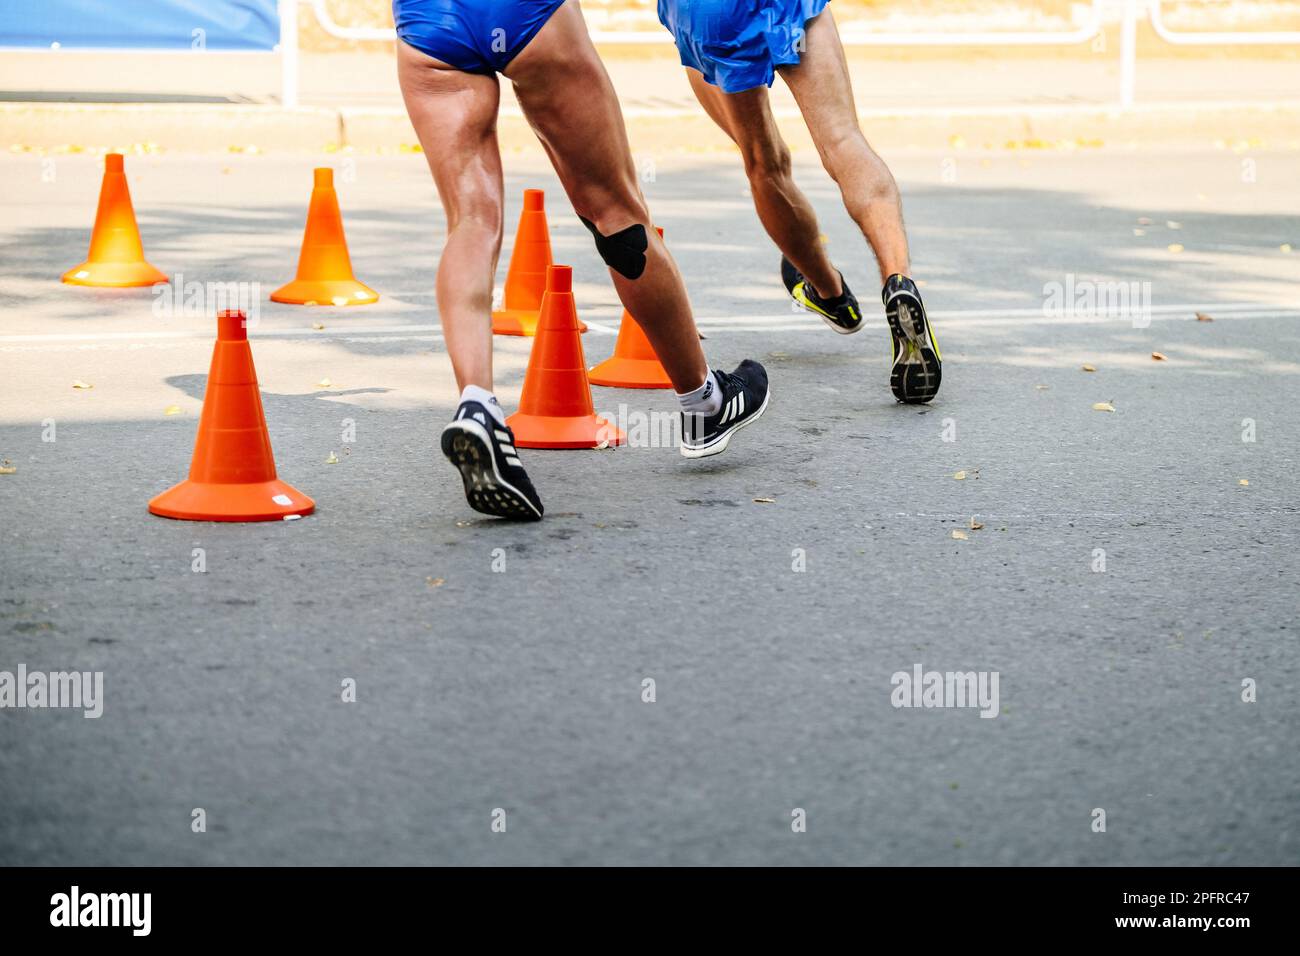 Athlète masculin et féminin en compétition de course, chaussures de sport pour la marche Adidas et Nike Banque D'Images